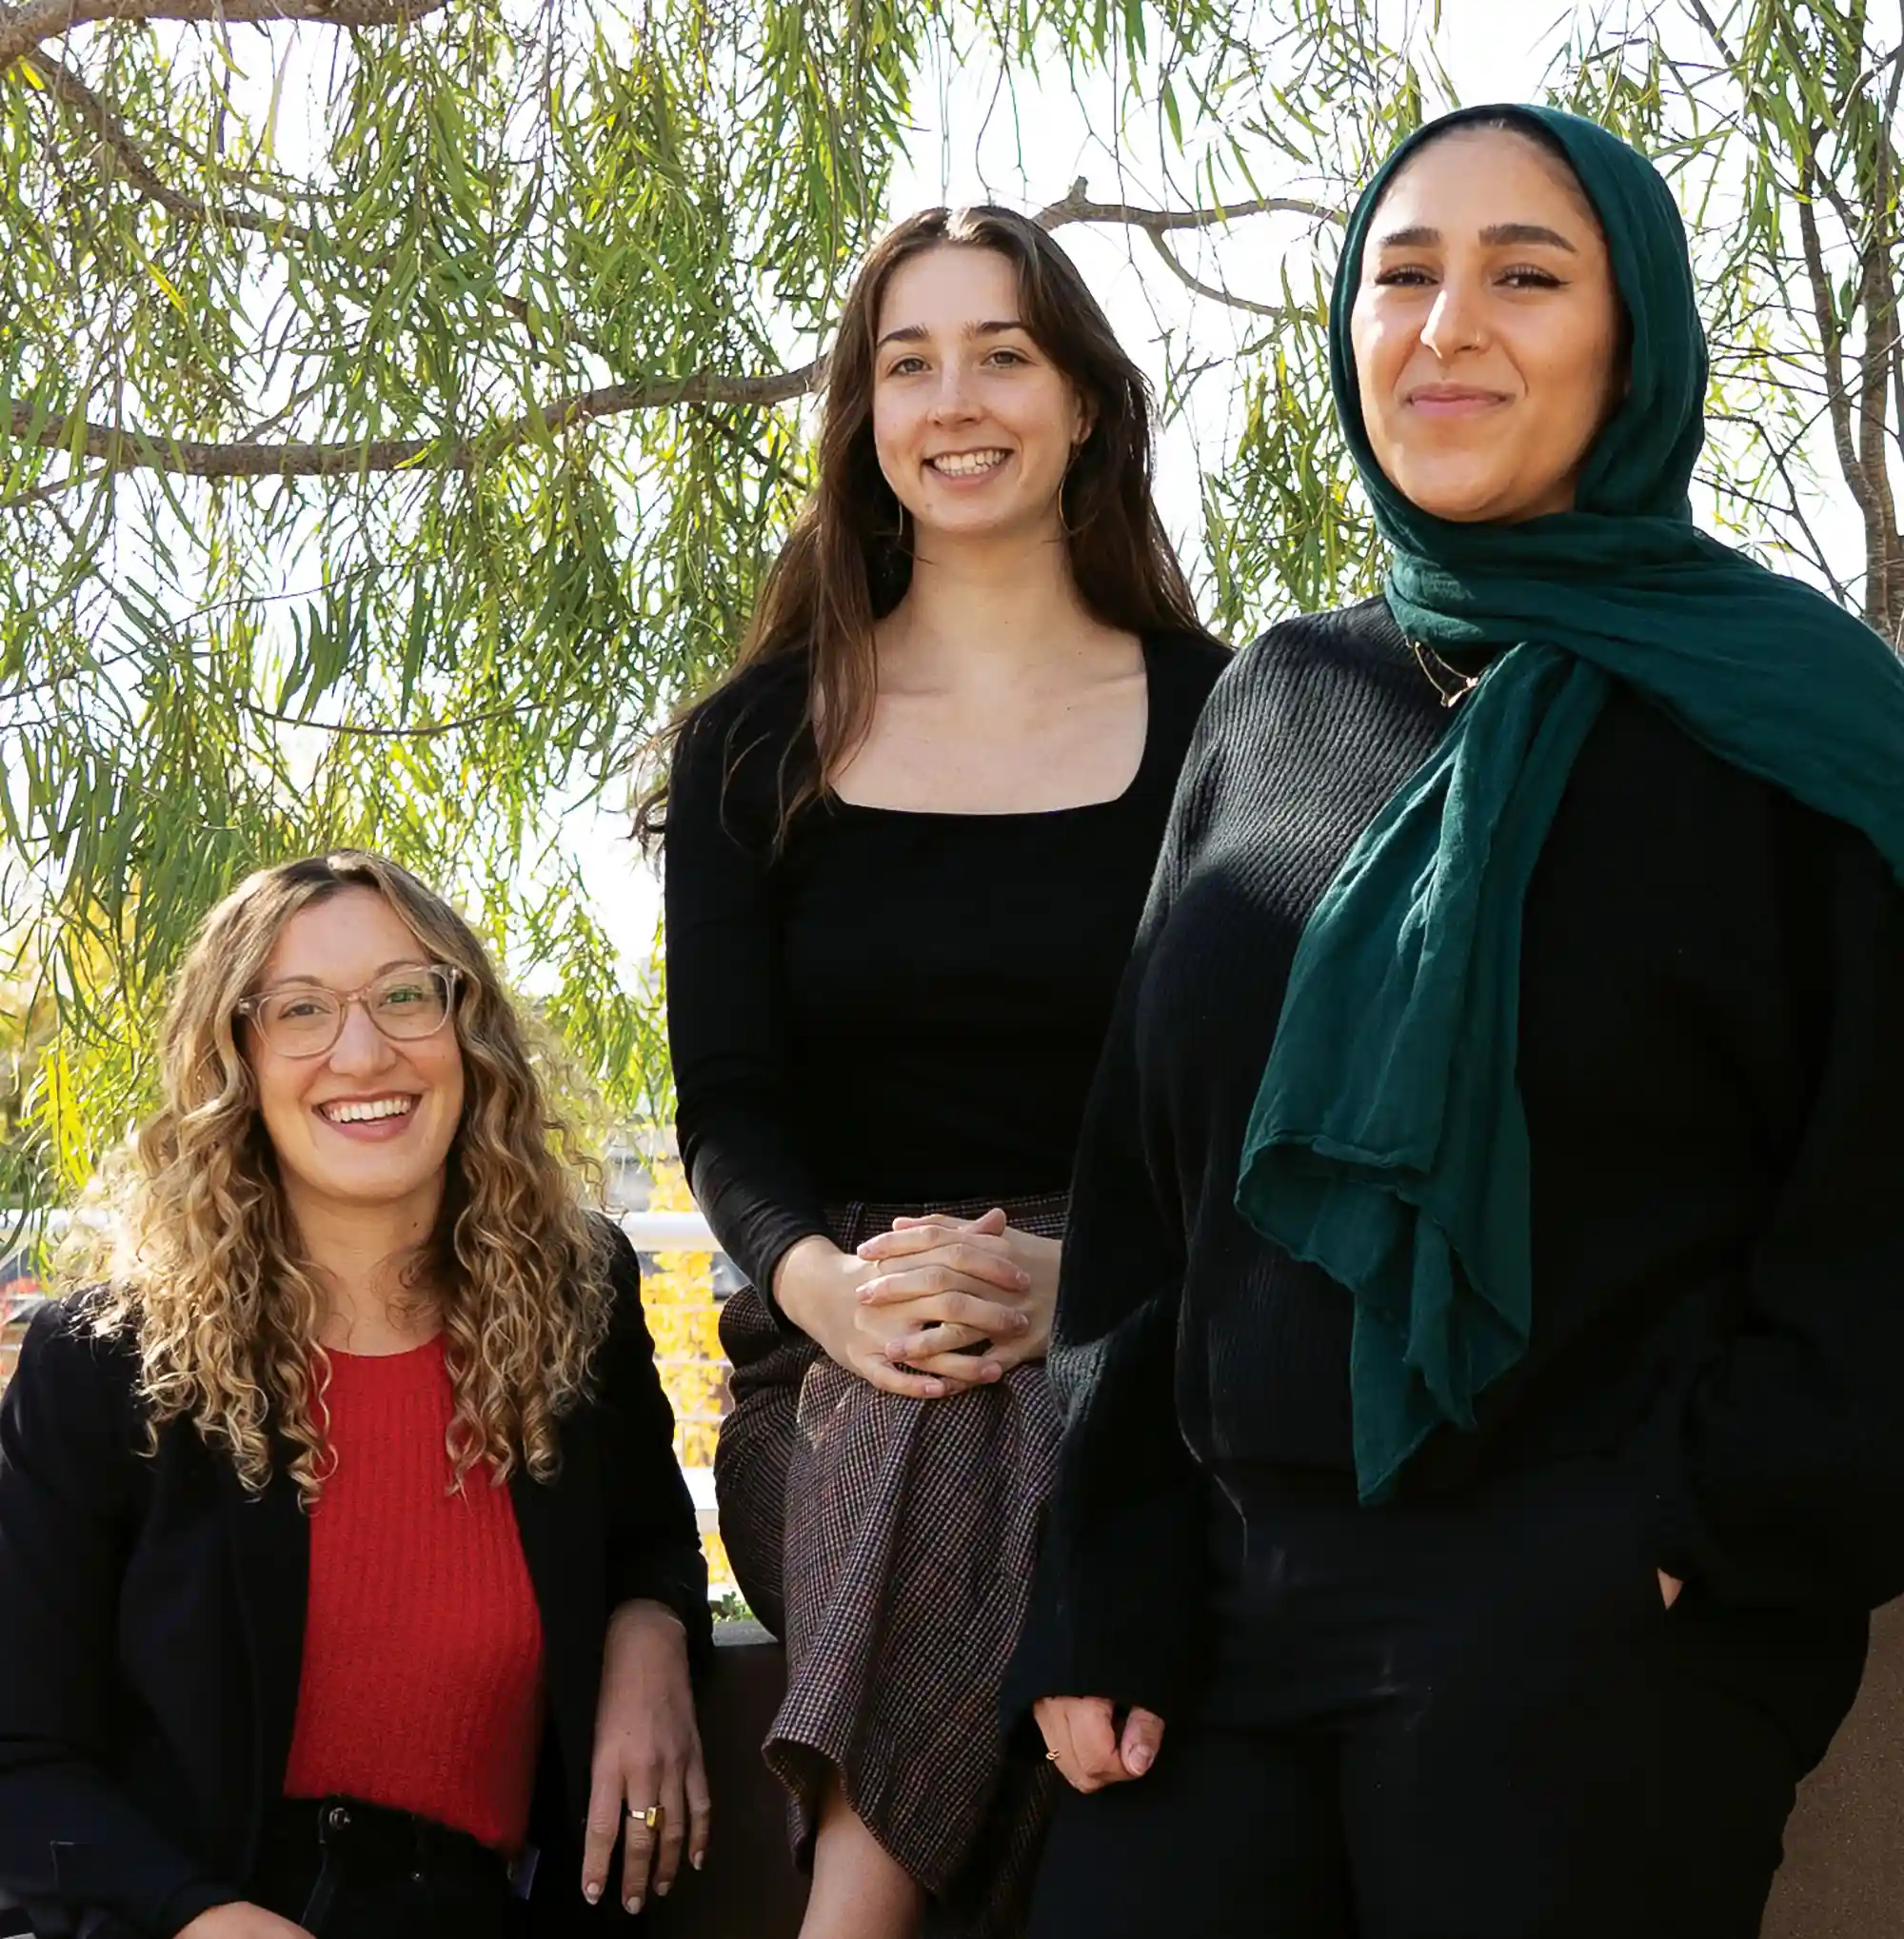  Mia Stange, Sophia Fenn, and Mariam Elbakr posing outside campus